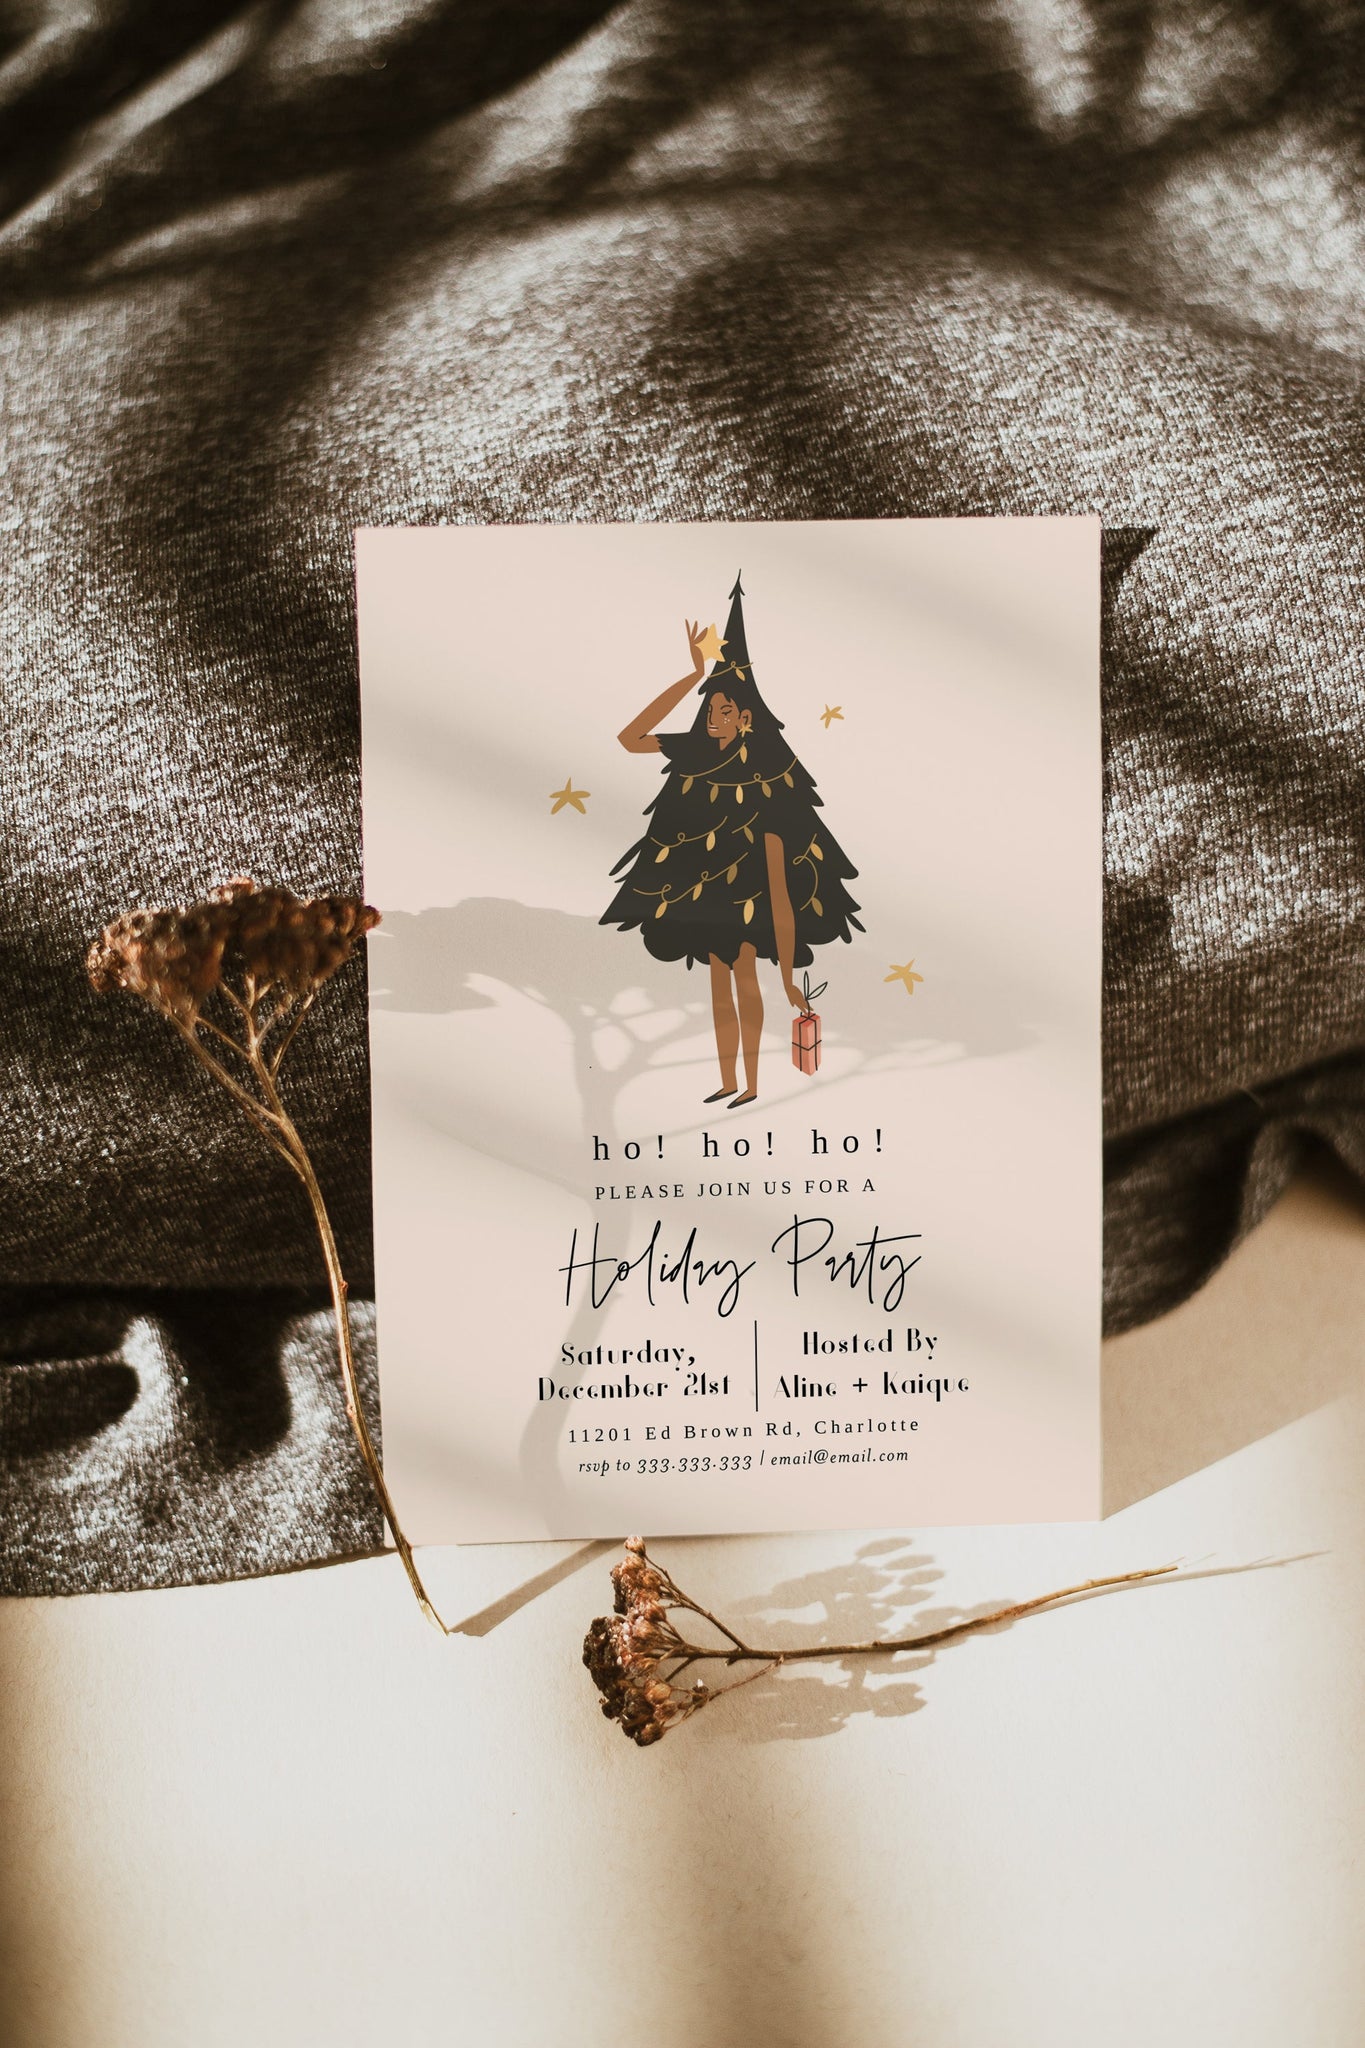 Christmas Party Invitation, Santa Hat, Editable Invitation Template, Printable Christmas Party Invite, Ho Ho Ho Invite, Holiday Party